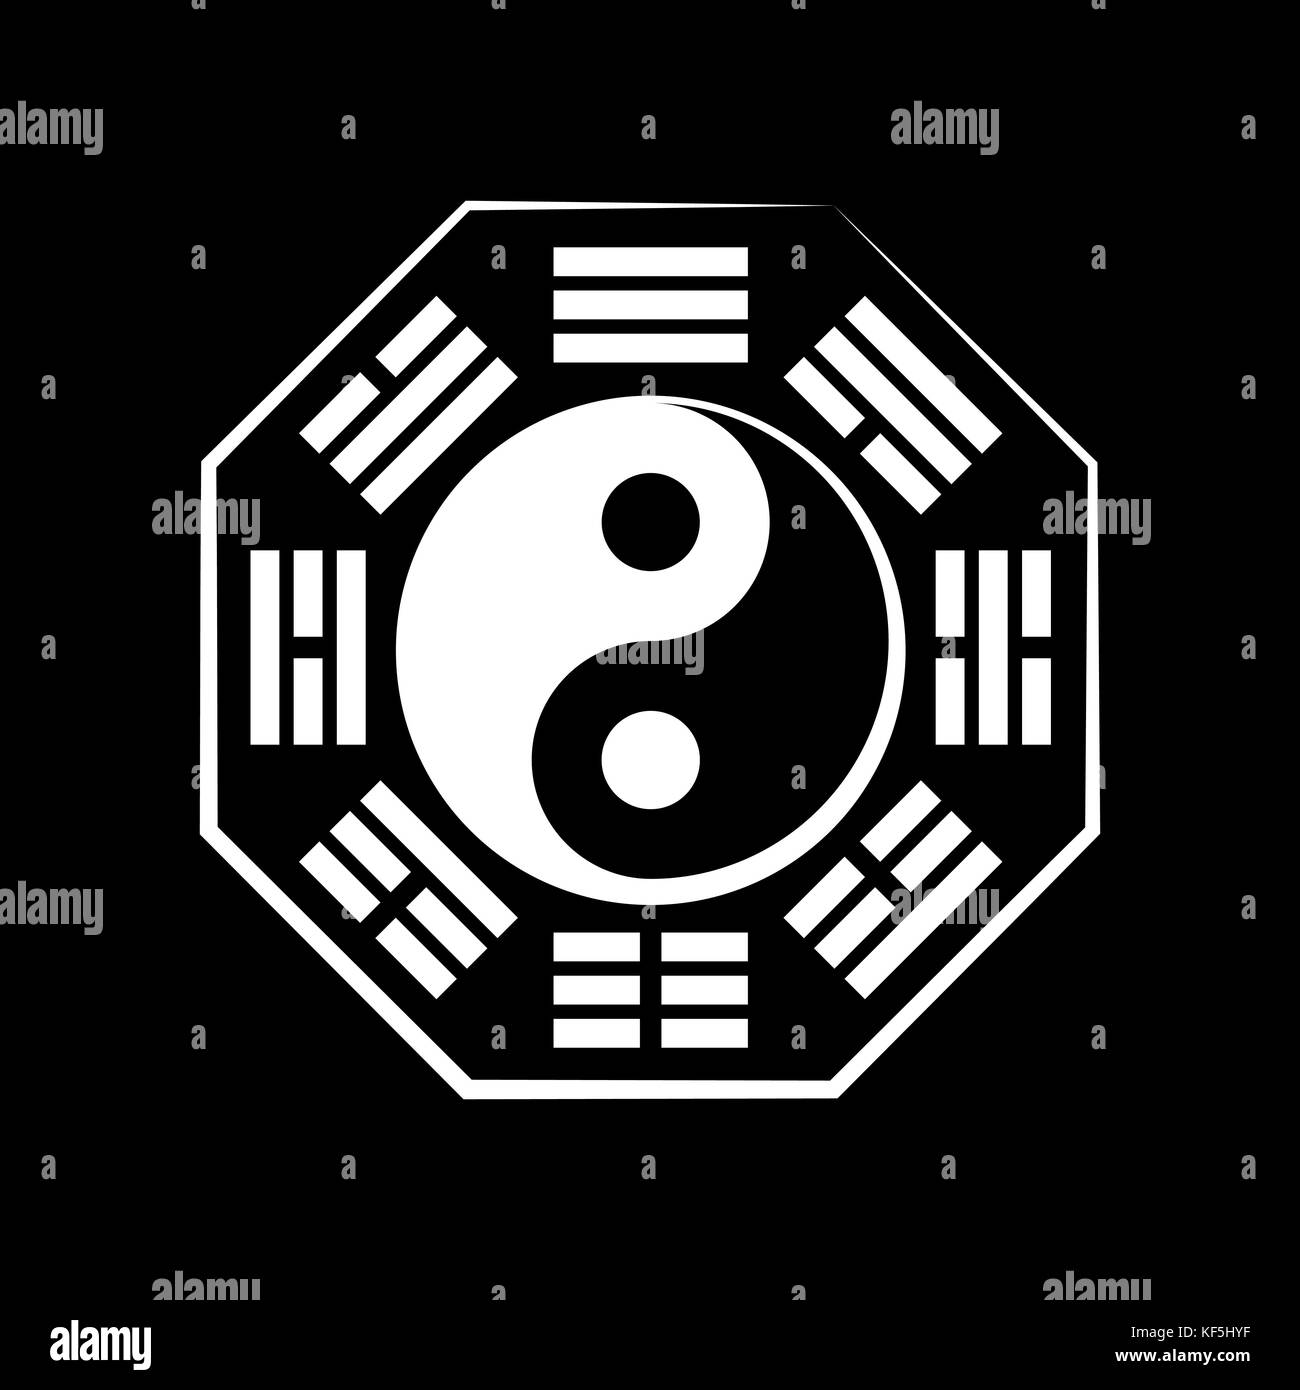 Yin-Yang e Ba-gua. Simbolo cosmico cinese della dualità e dell'unità degli opposti, circondato da geroglifici degli otto elementi della natura. Illustrazione Vettoriale